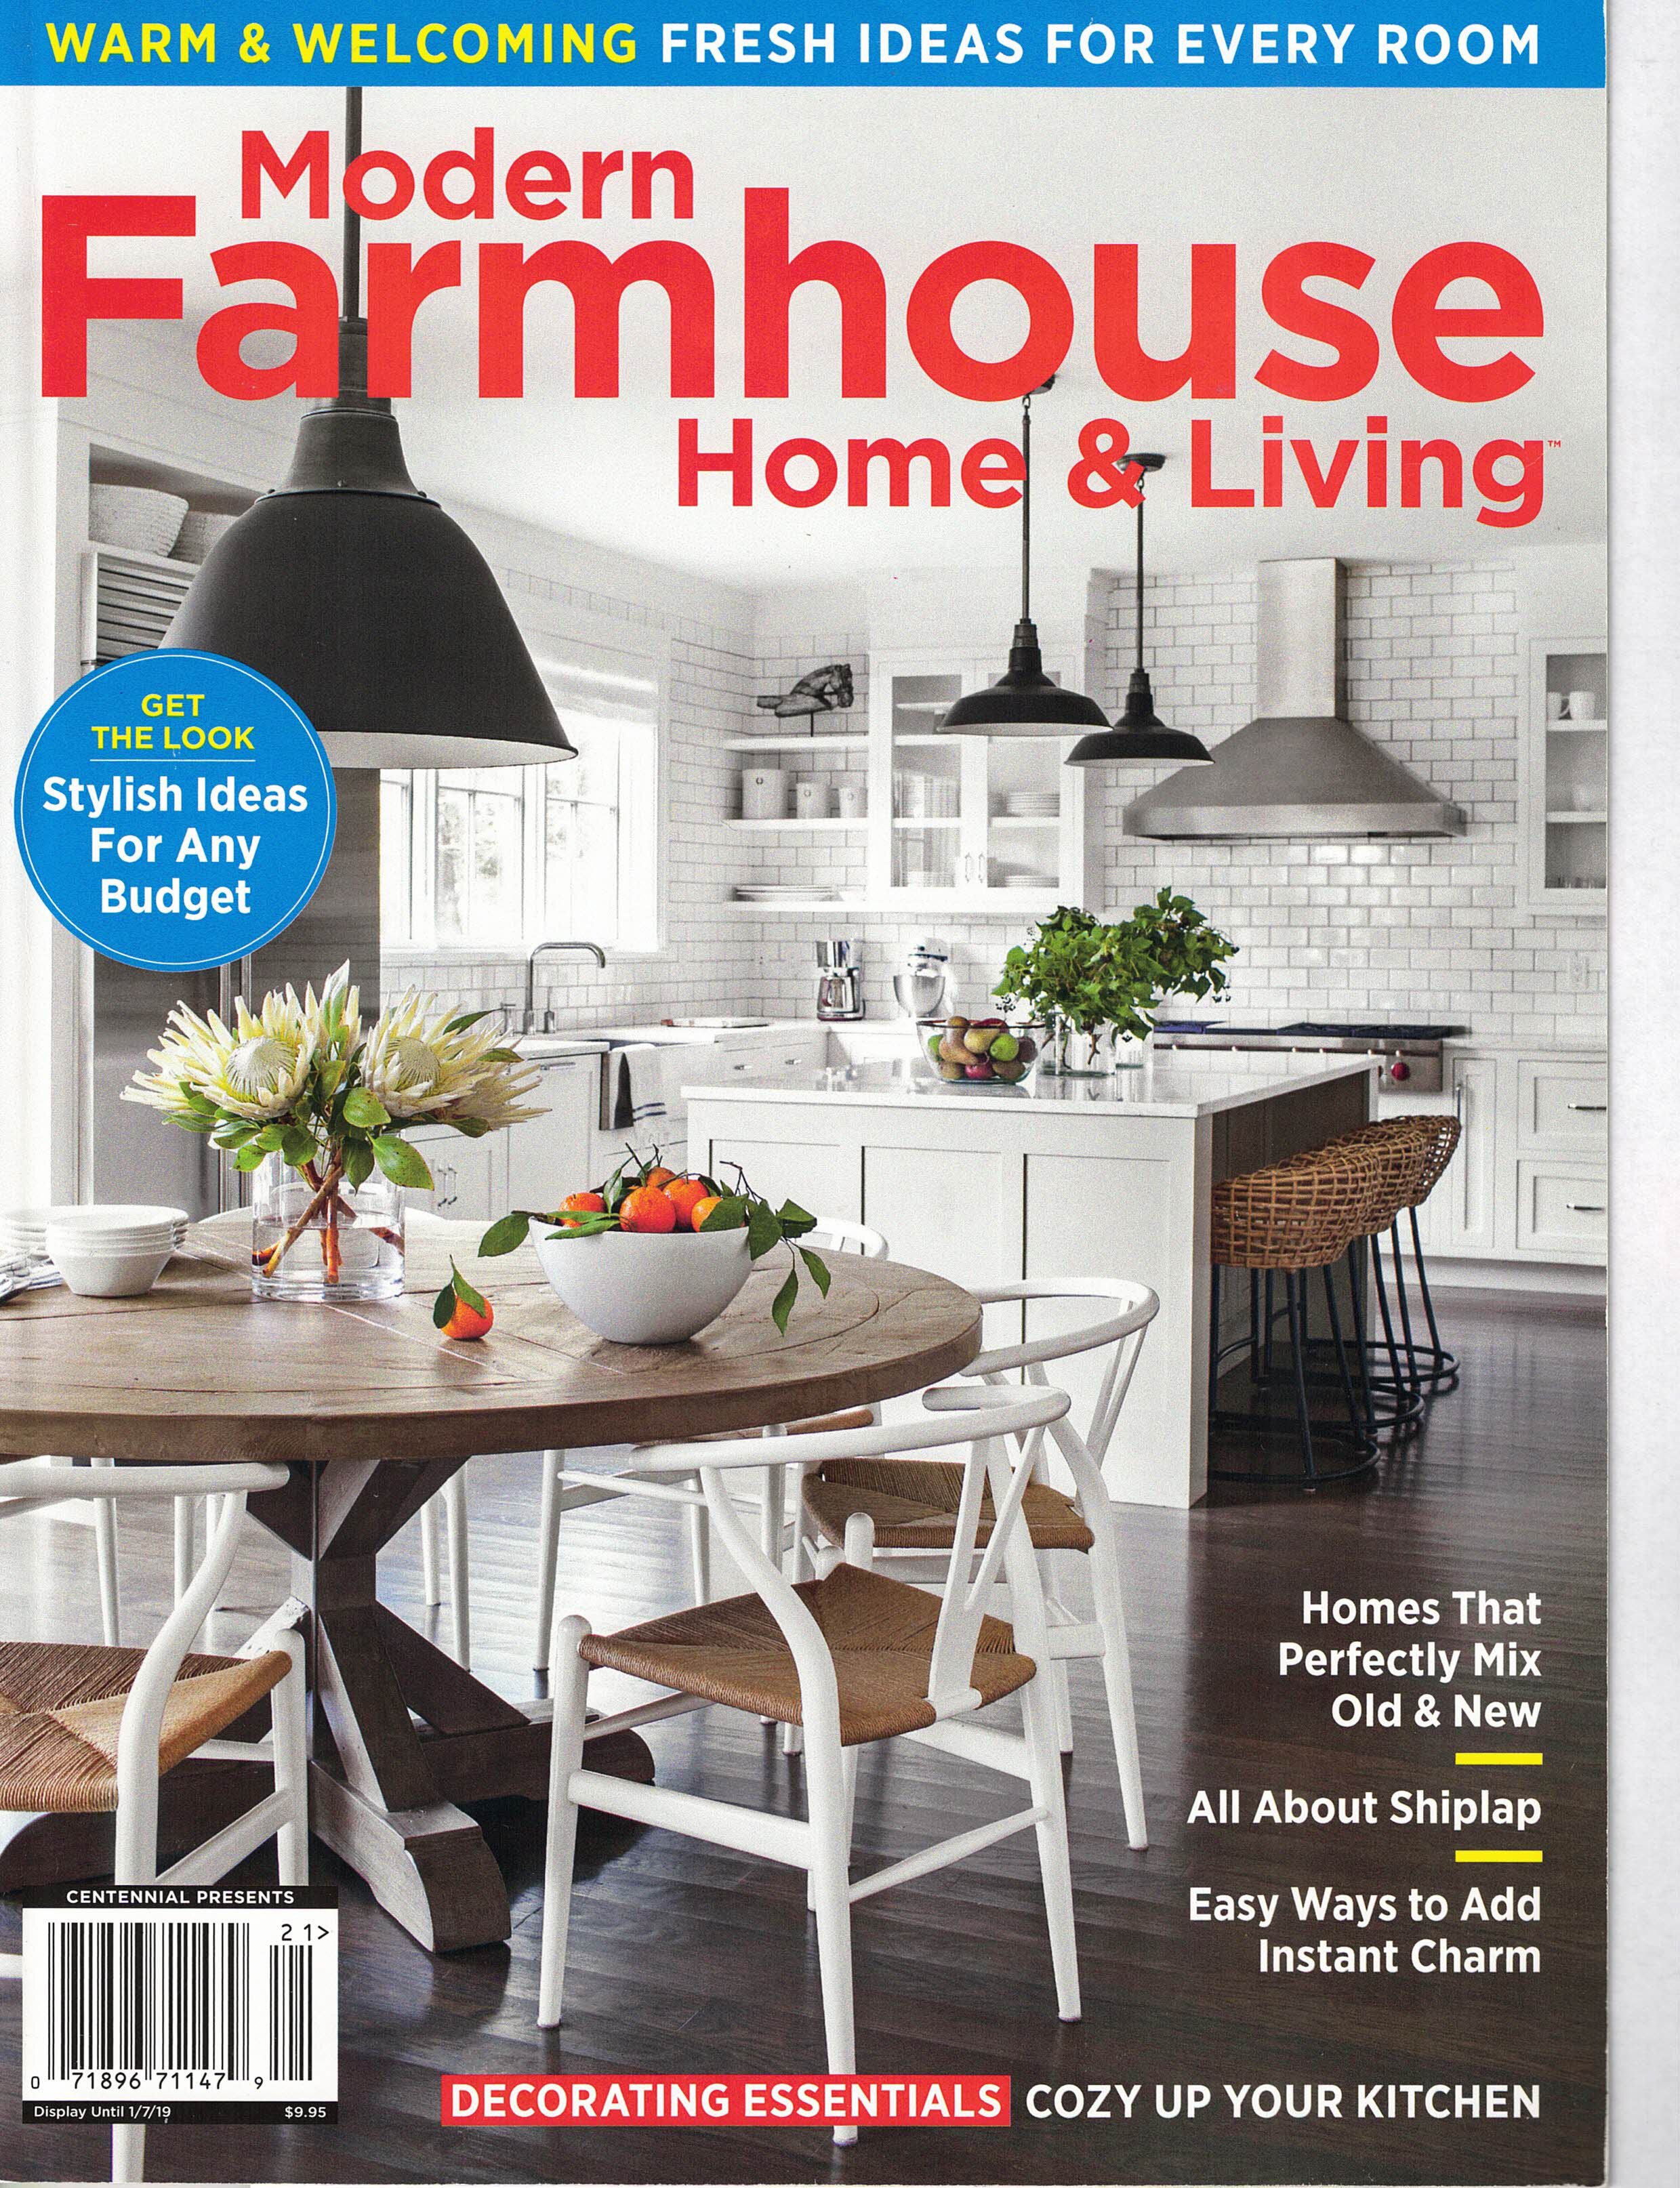 Modern Farmhouse 2019 cover.jpg